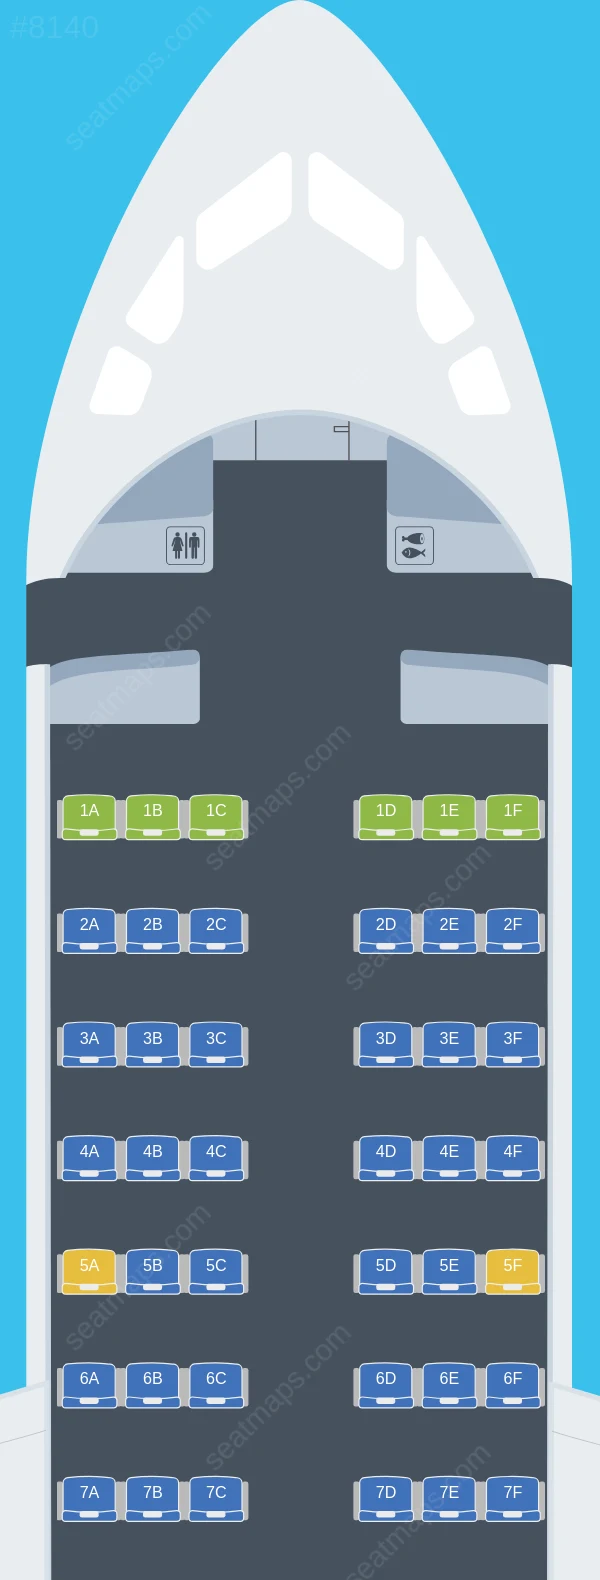 Aerovías DAP BAe 146-200 seatmap preview